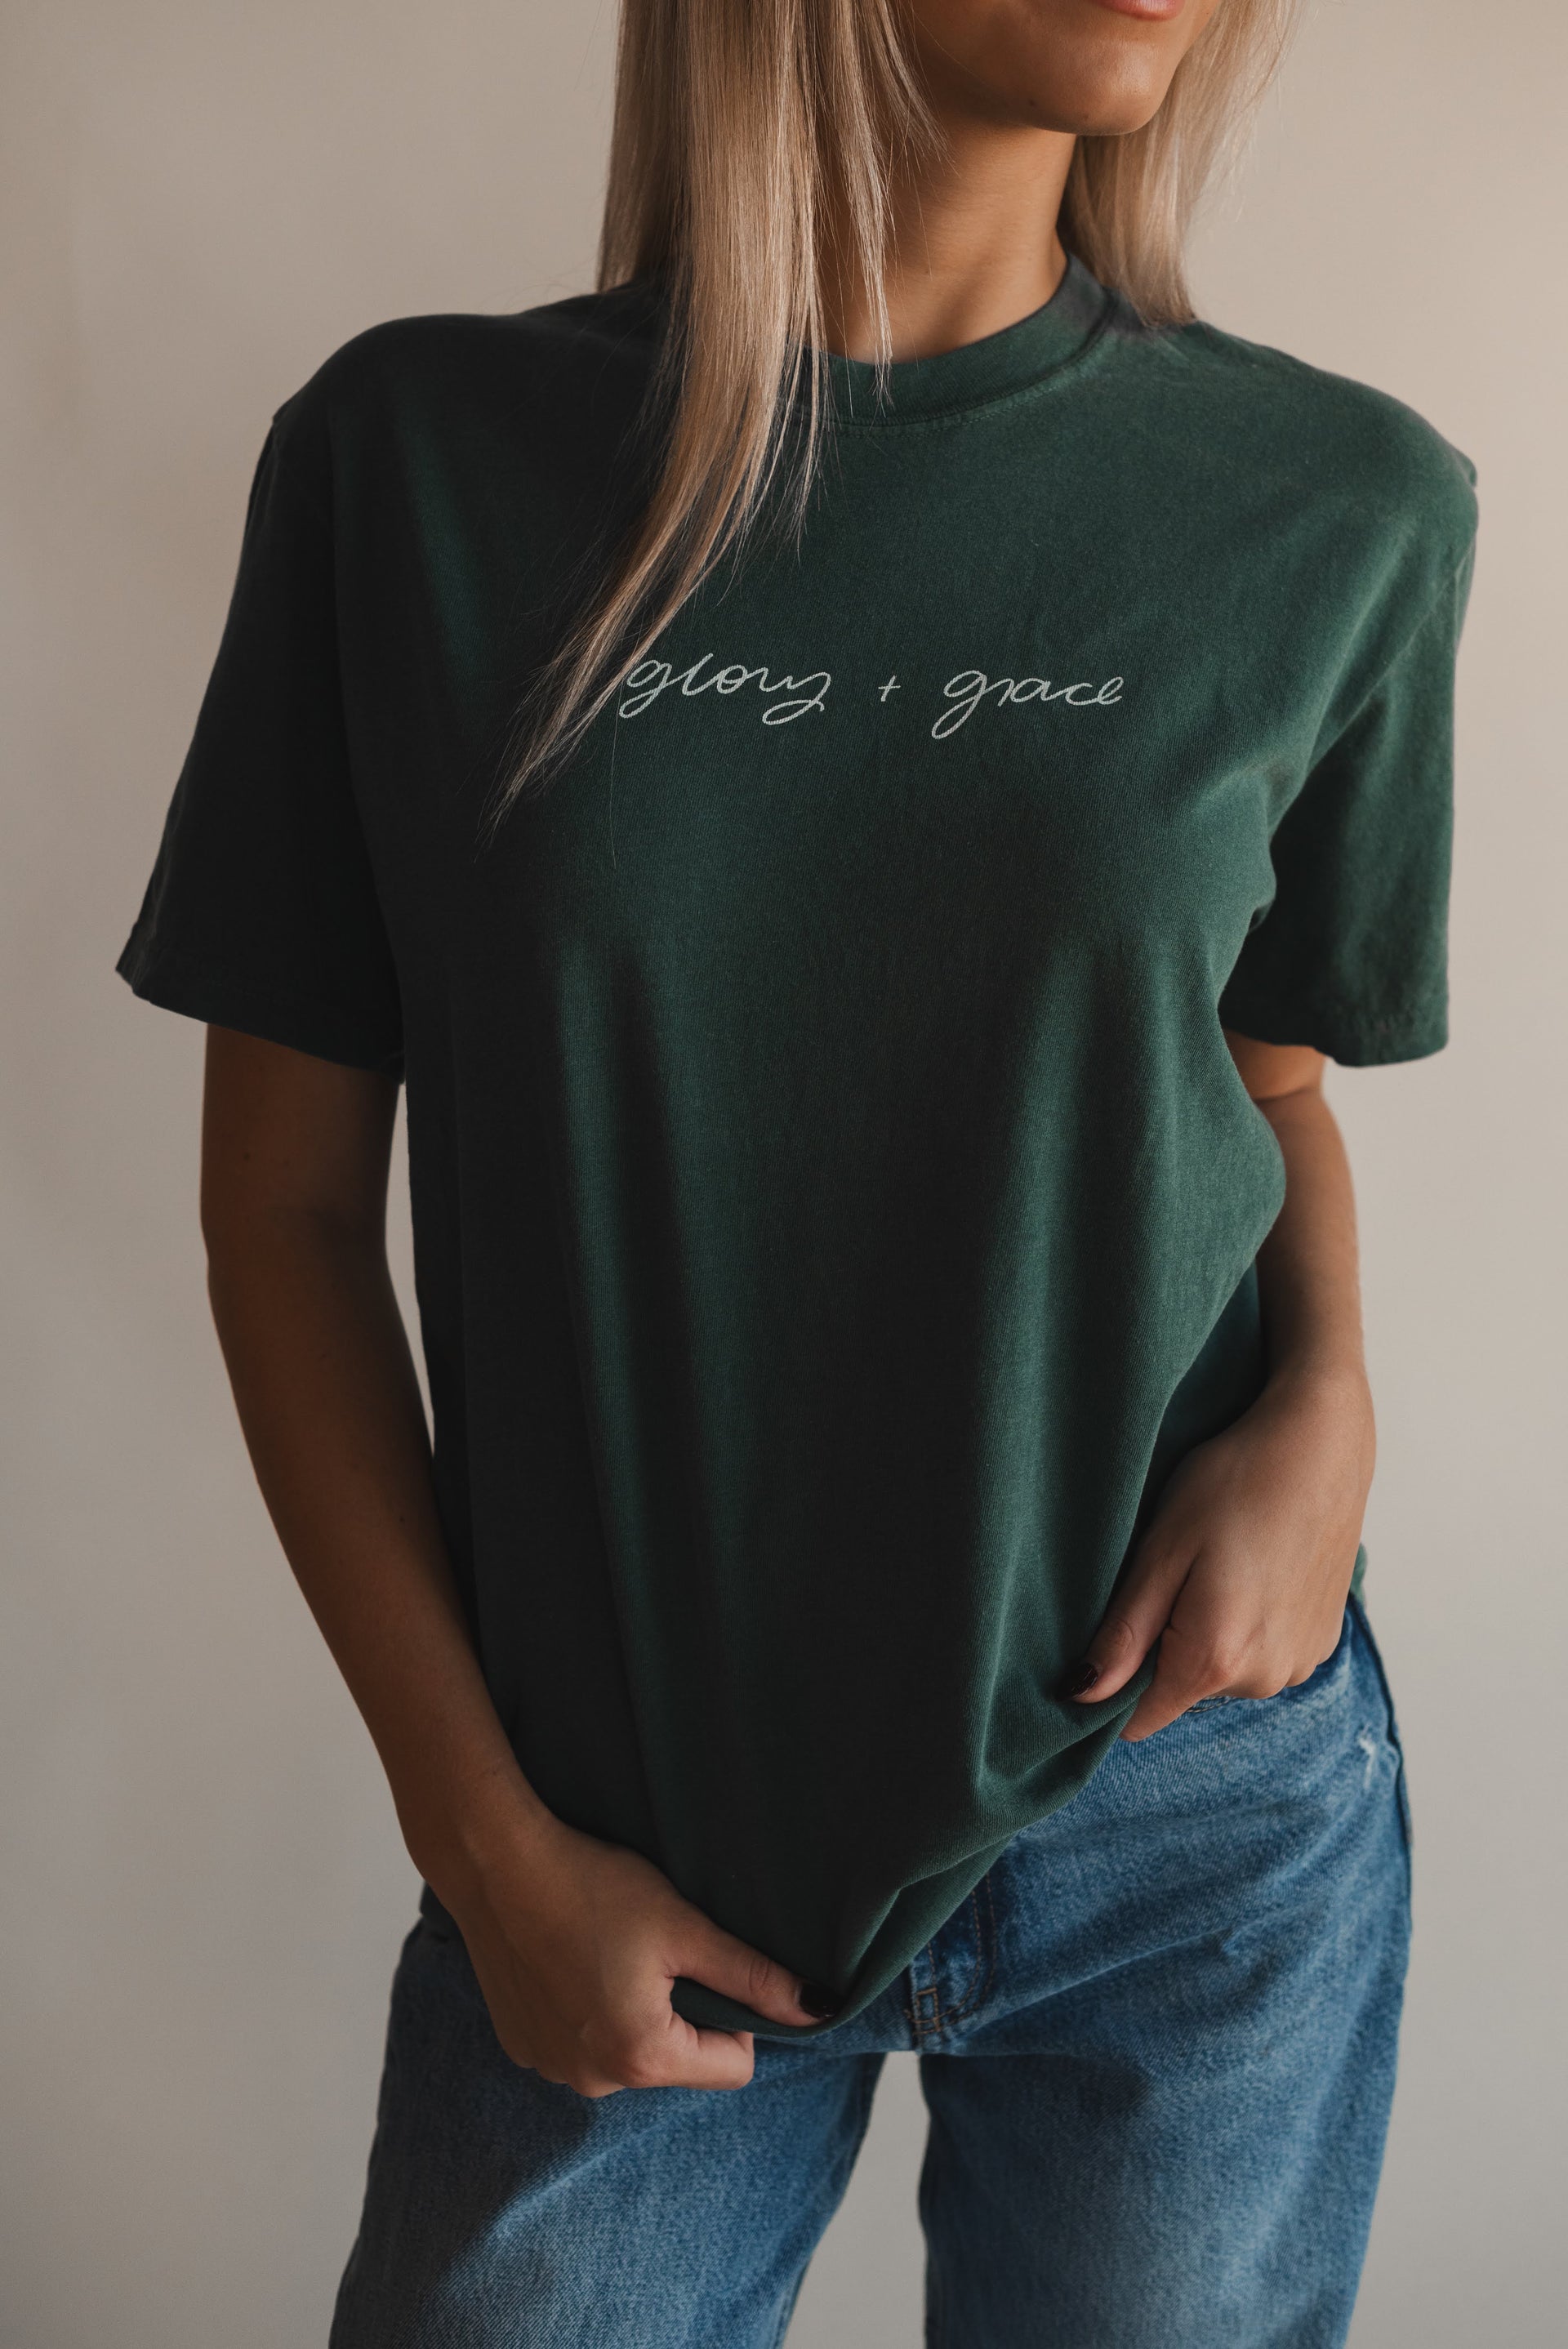 Glory + Grace Tee- Spruce – Dear Heart